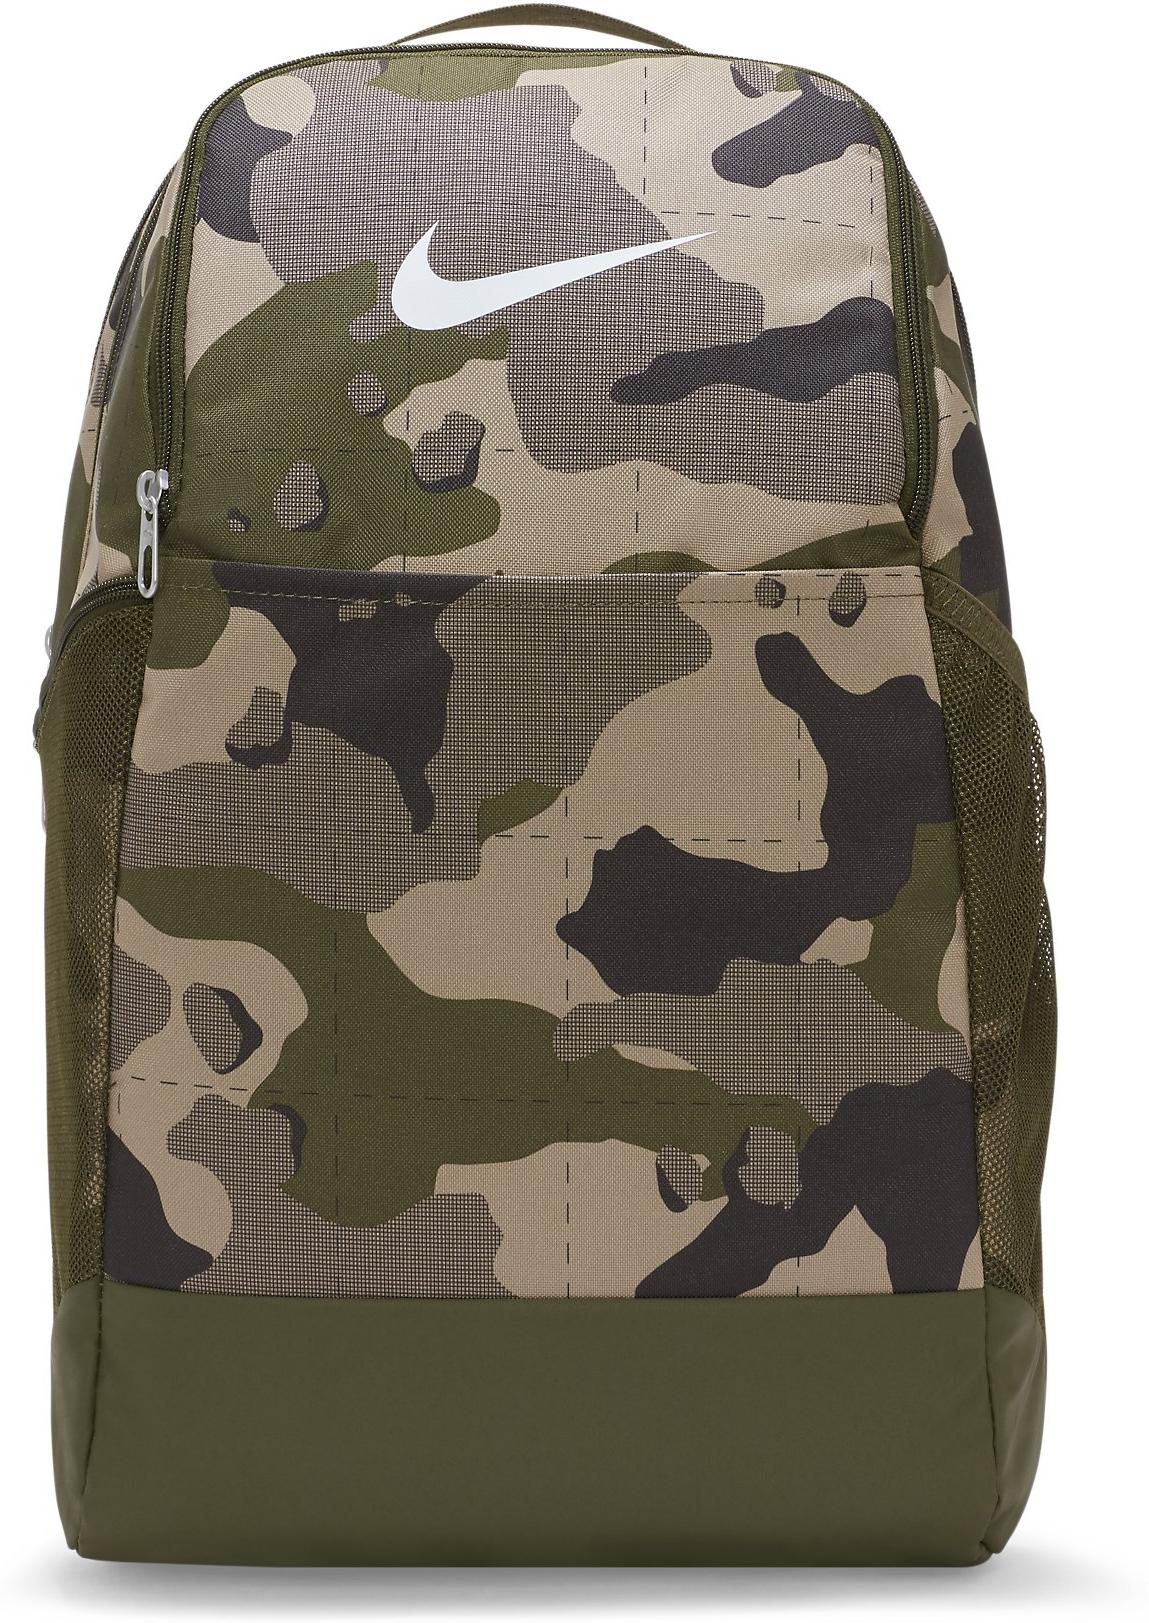 Nike Brasilia Camo Training Backpack (Medium) Hátizsák